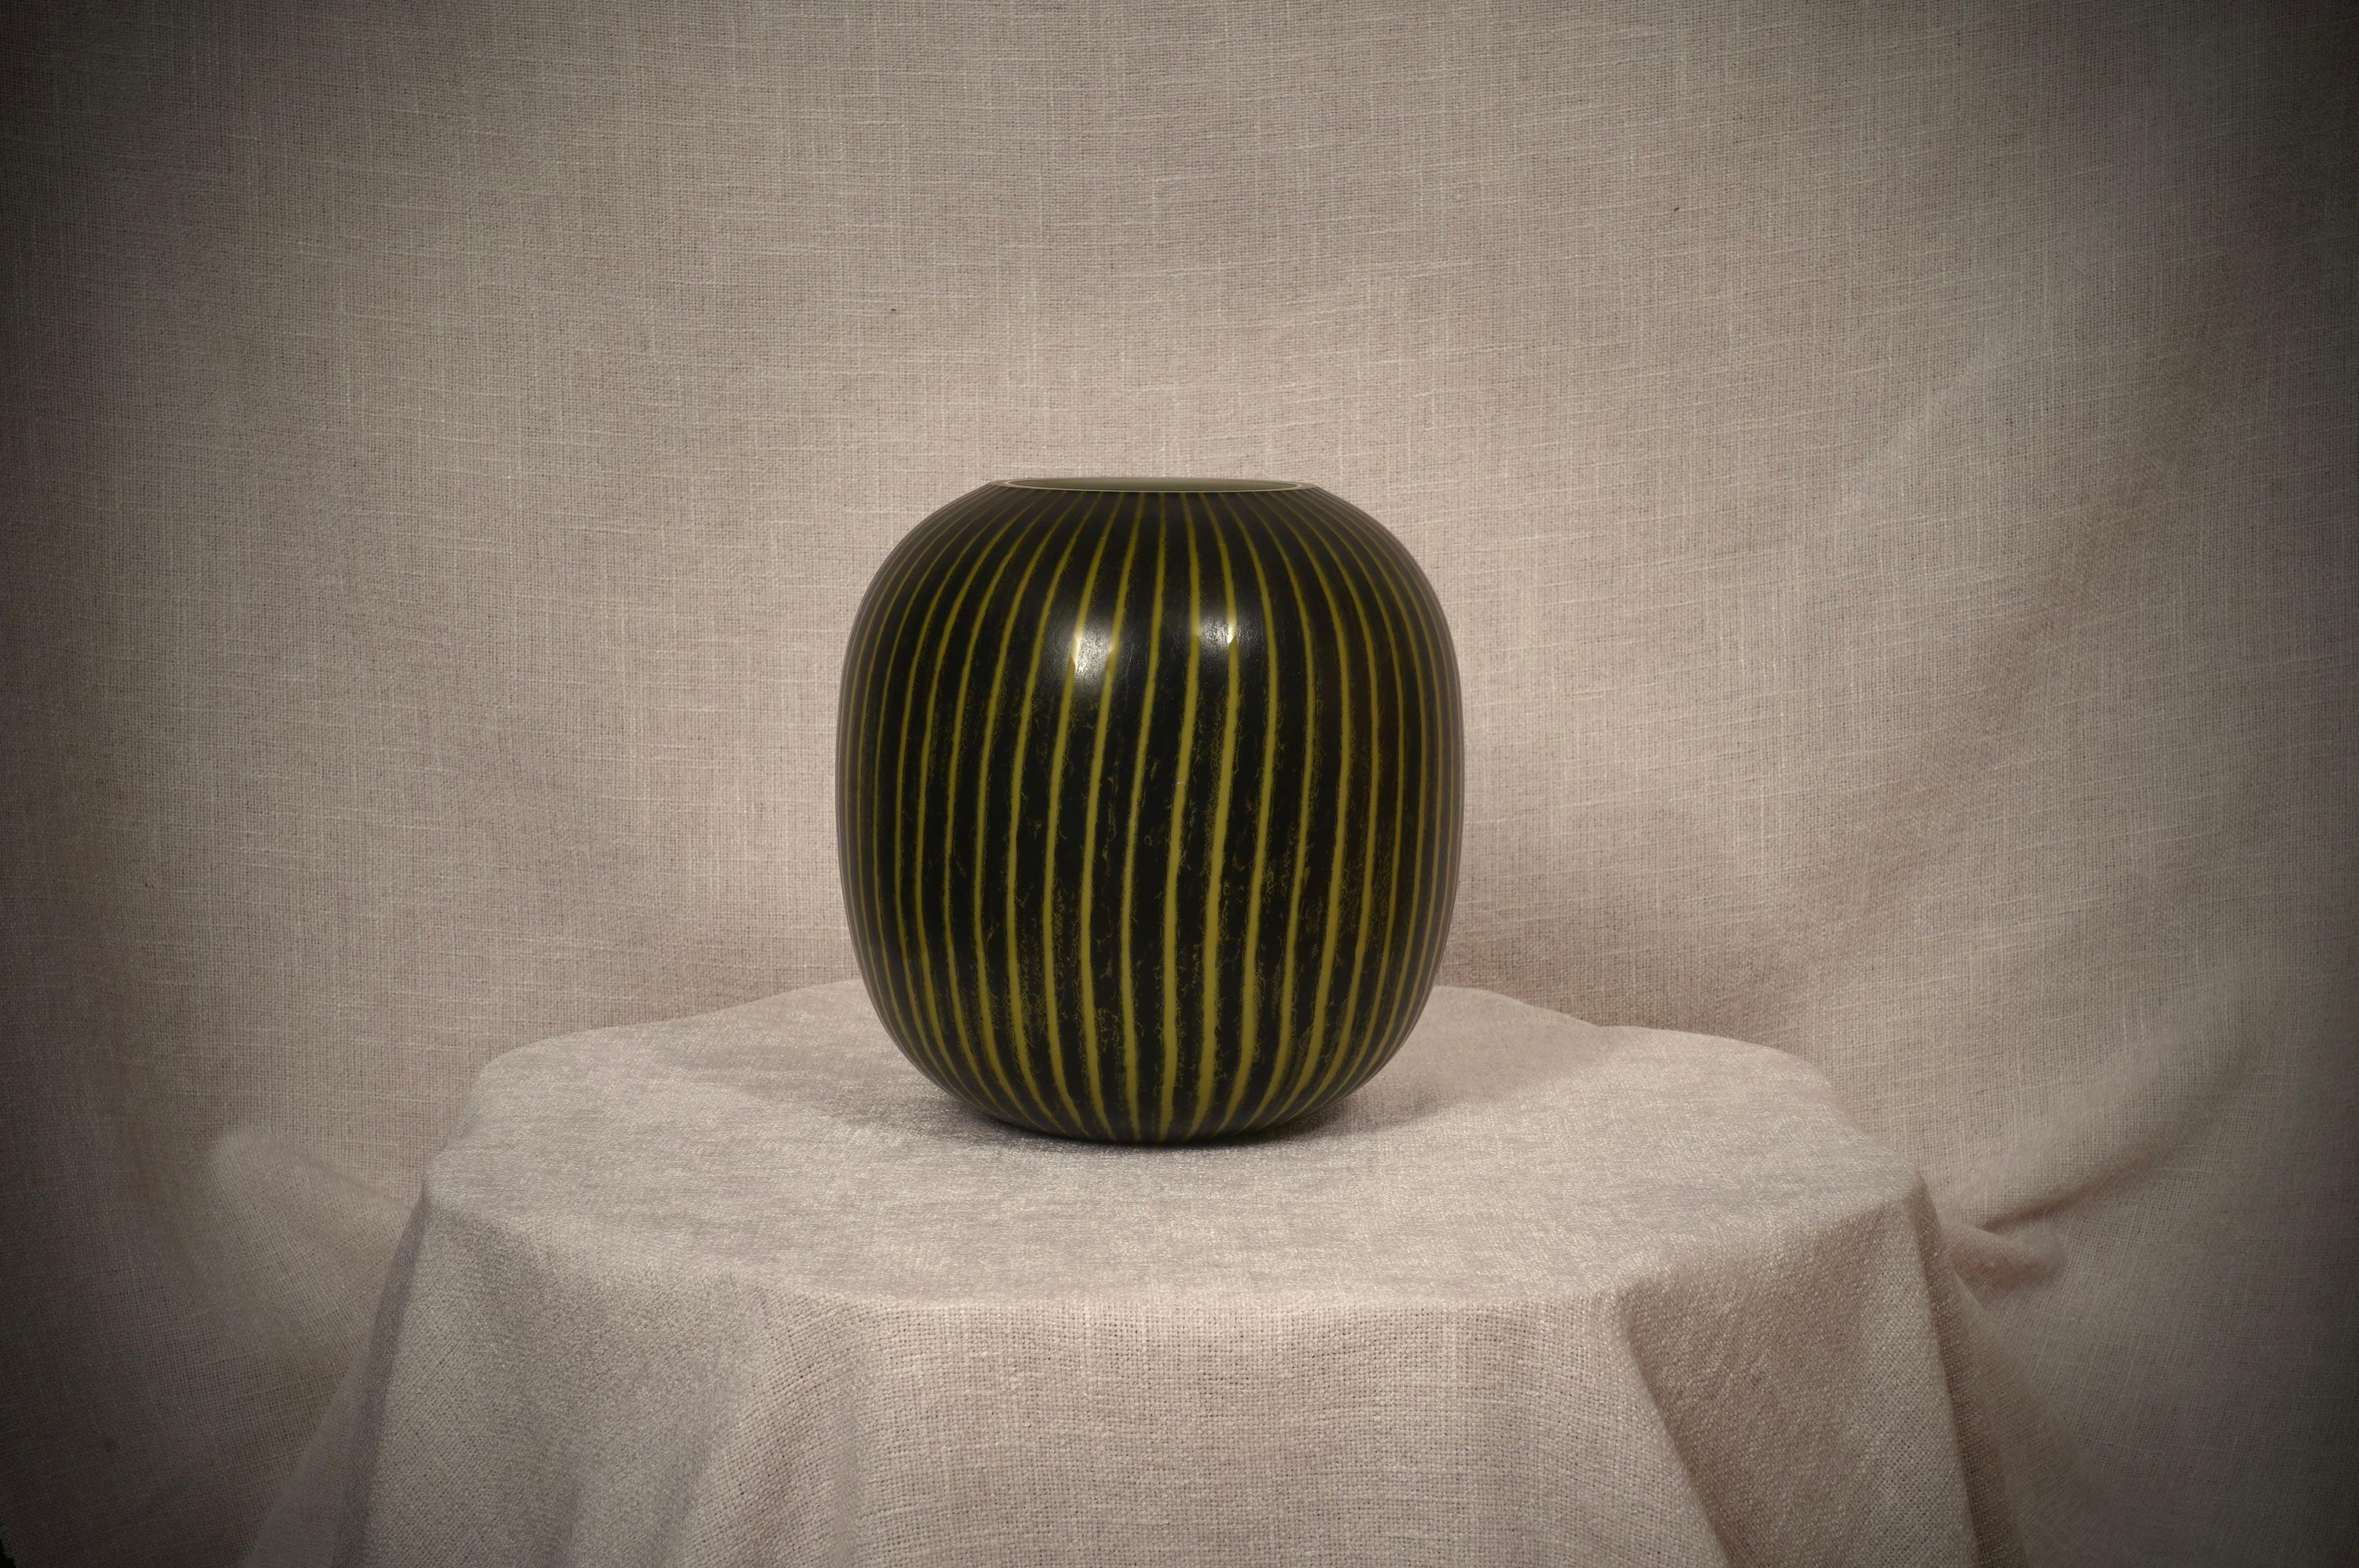 Schöne Vase aus Murano, klassisches Amphoren-Design. Sehr leicht, dünn und zart, mit einer schönen leuchtend gelben Farbe, die auf einem schwarzen Grund hervorsticht.

Die vollständig von Hand geblasene Murano-Vase ist von einer noch nie dagewesenen